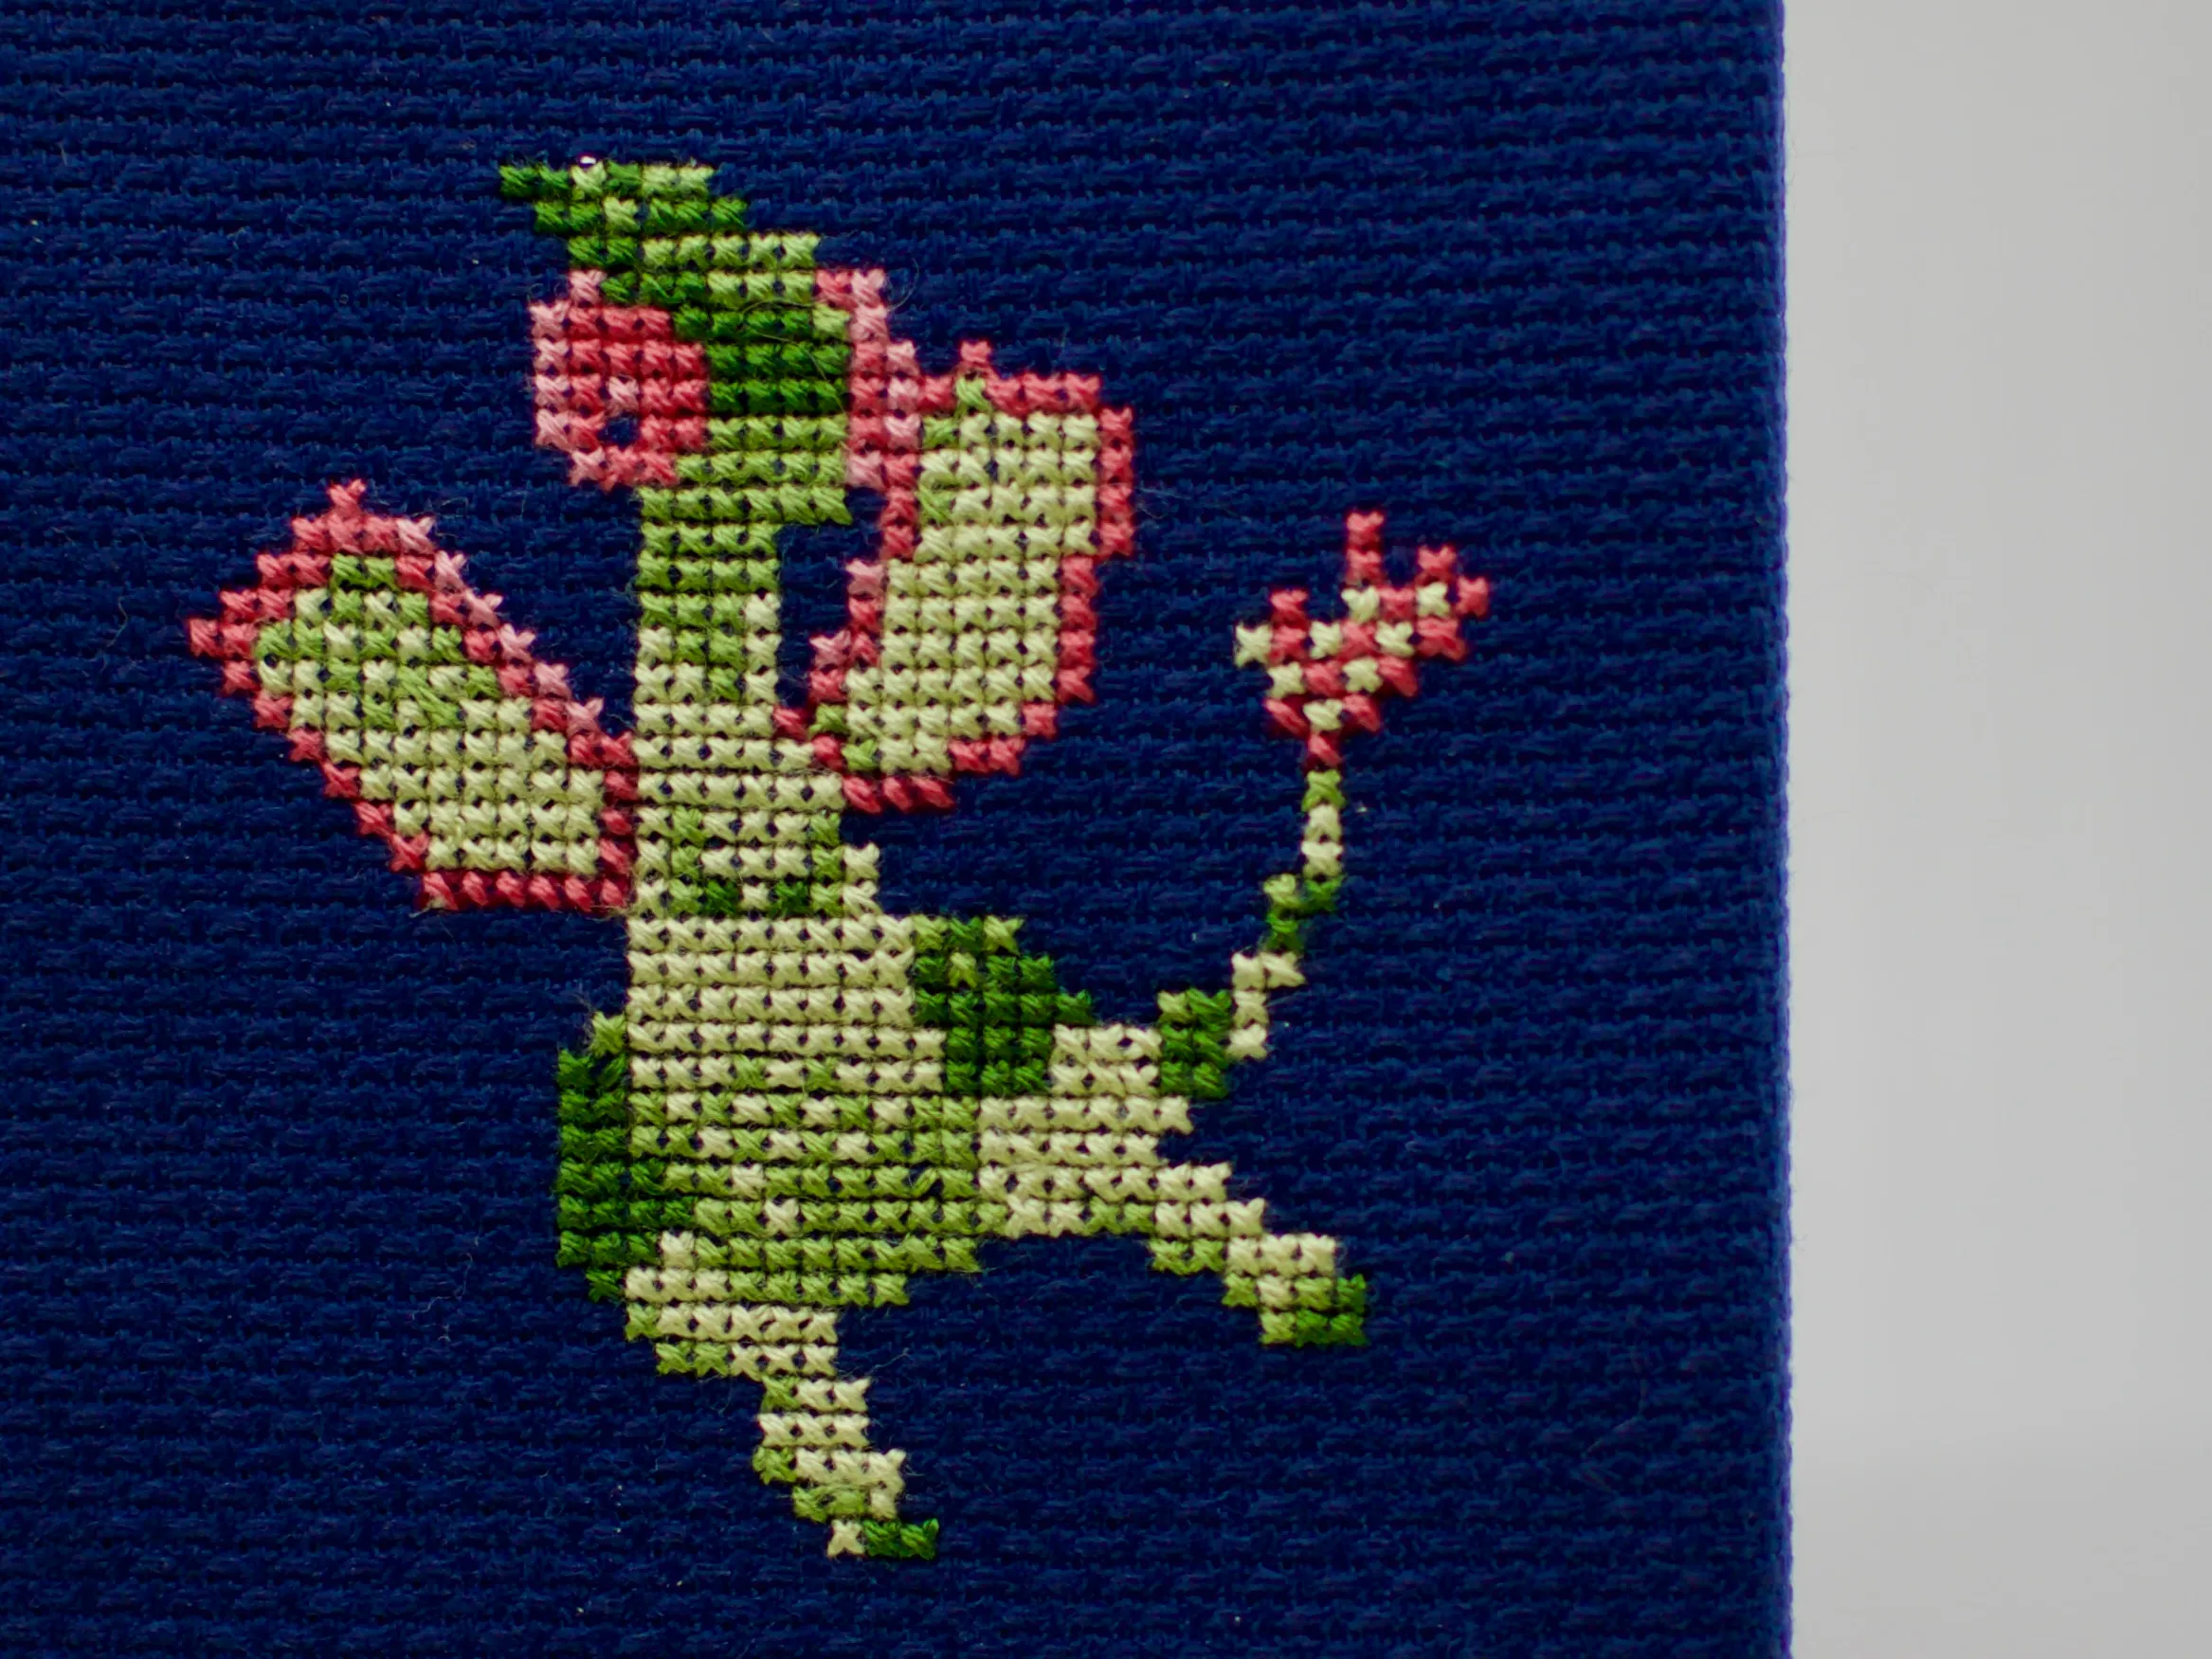 A cross-stitch of the Pokémon Flygon.